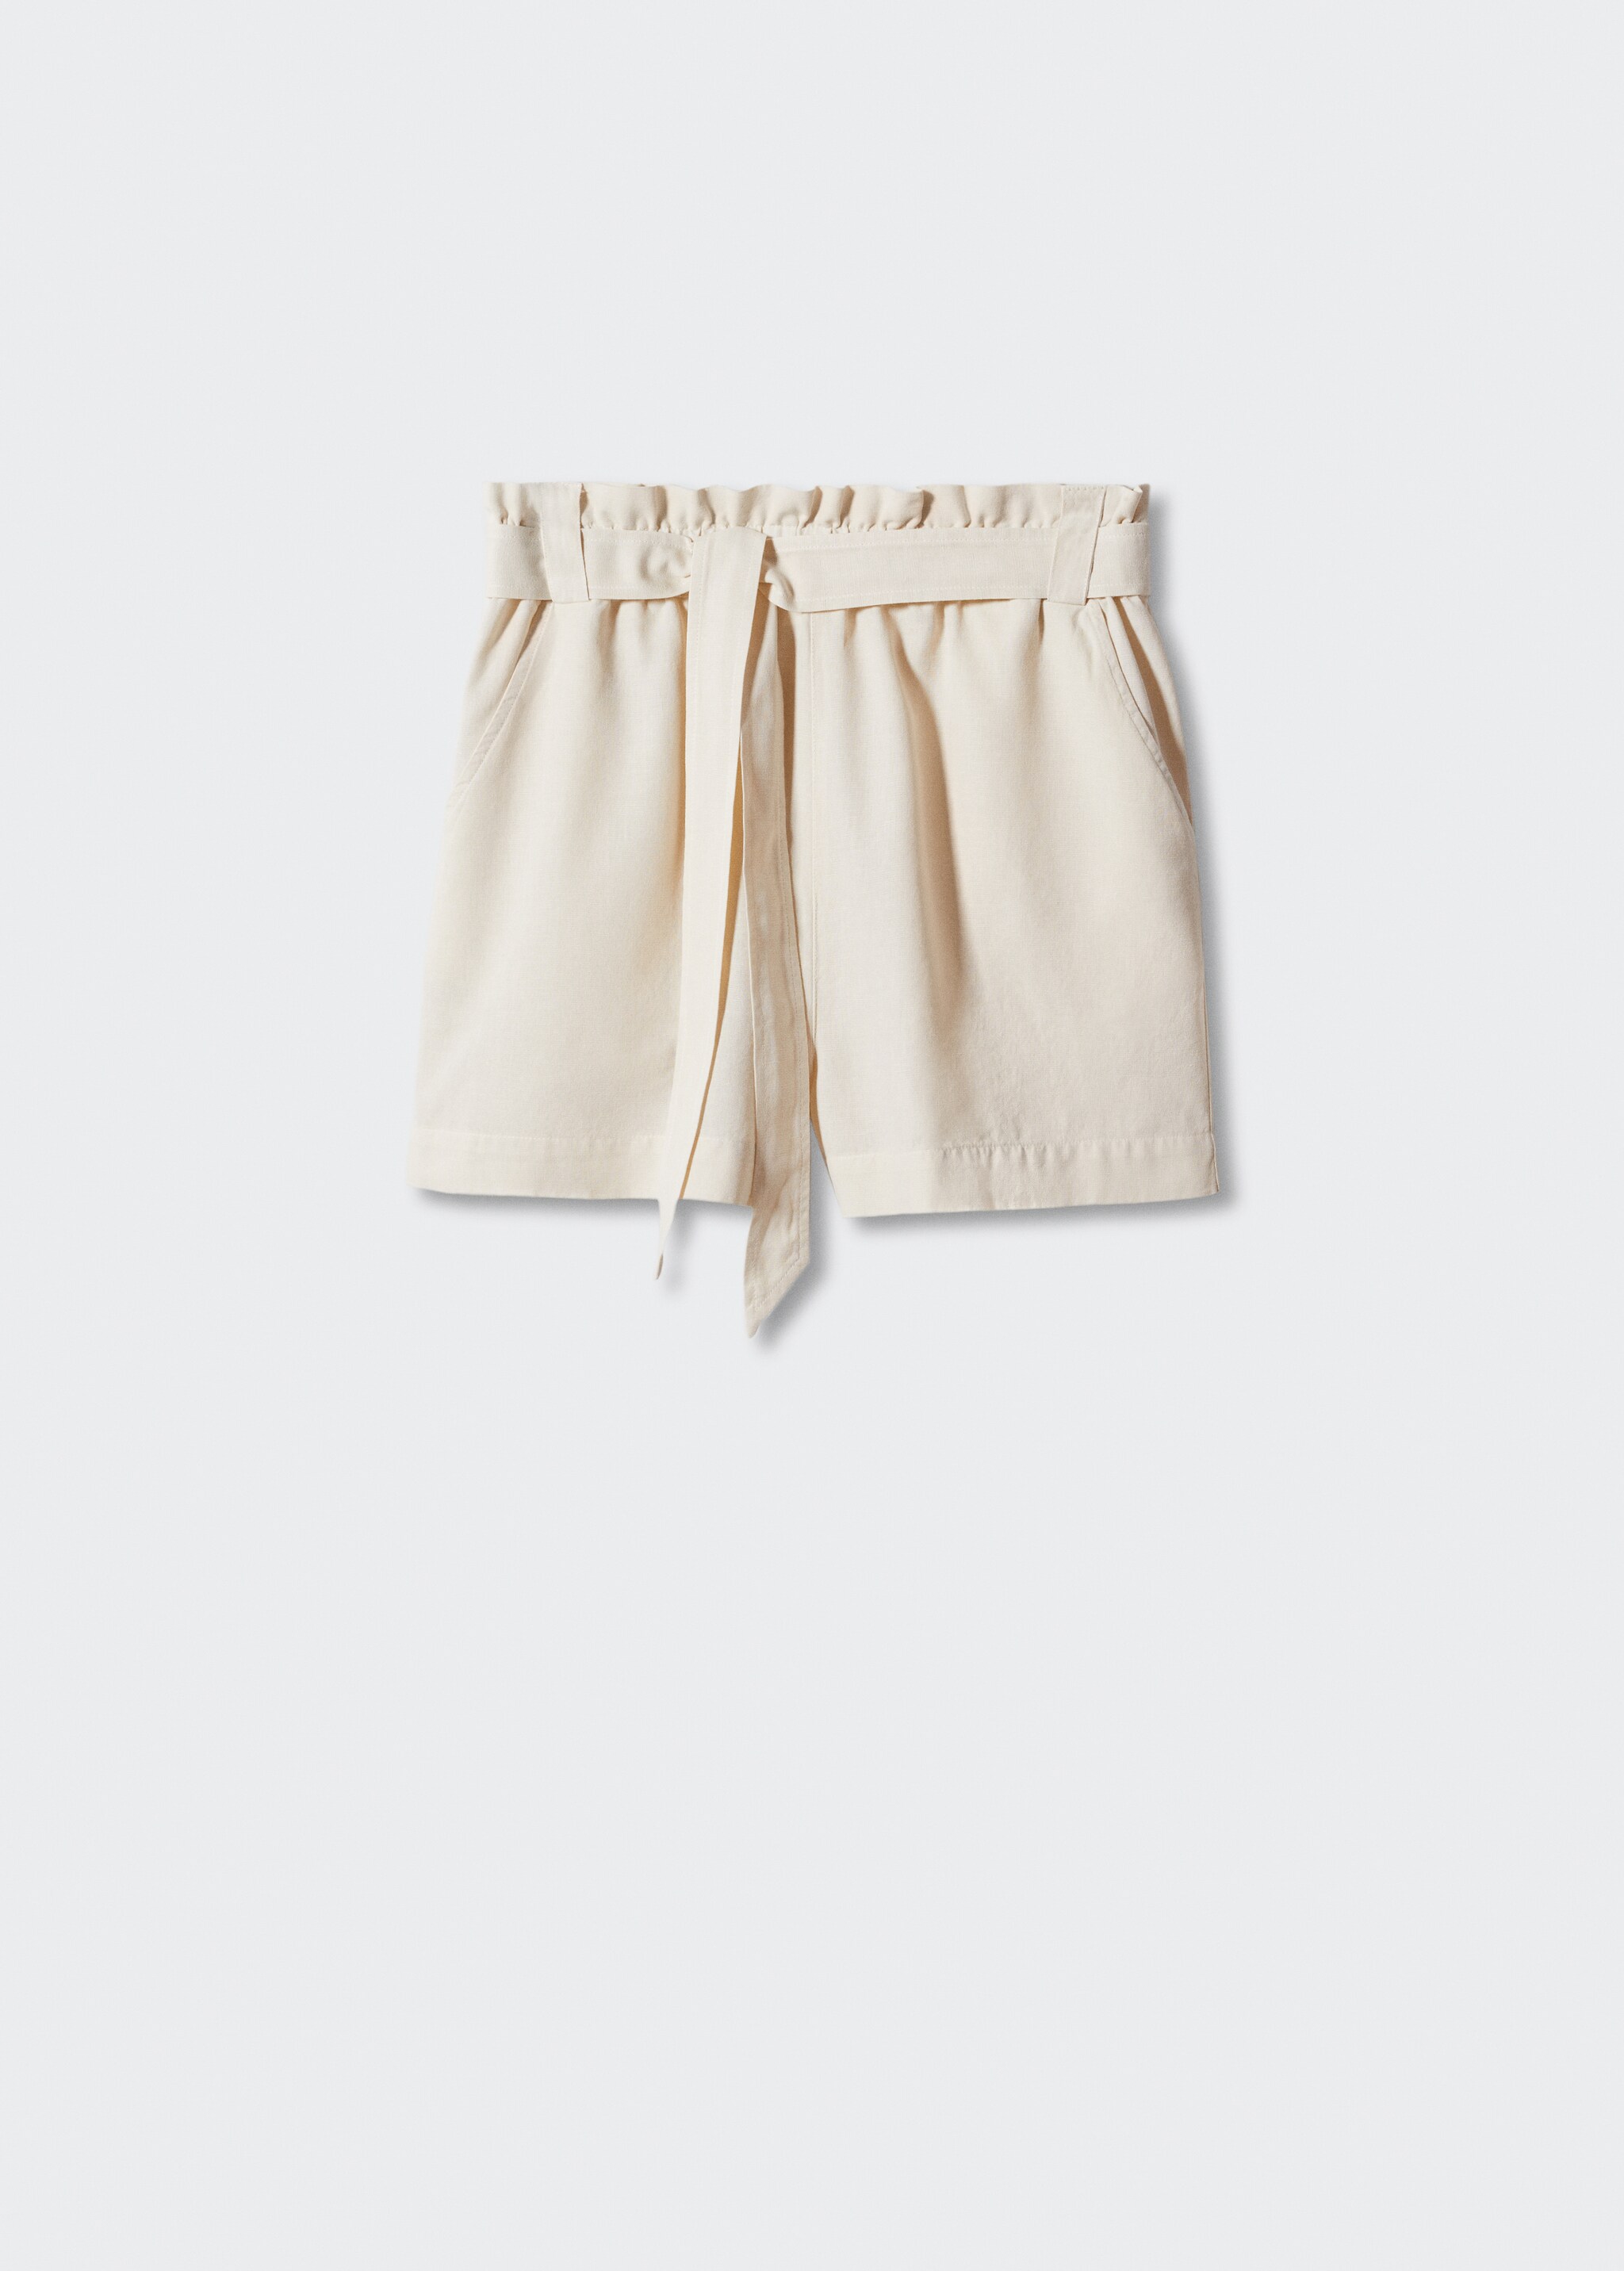 Shorts algodón lino - Artículo sin modelo